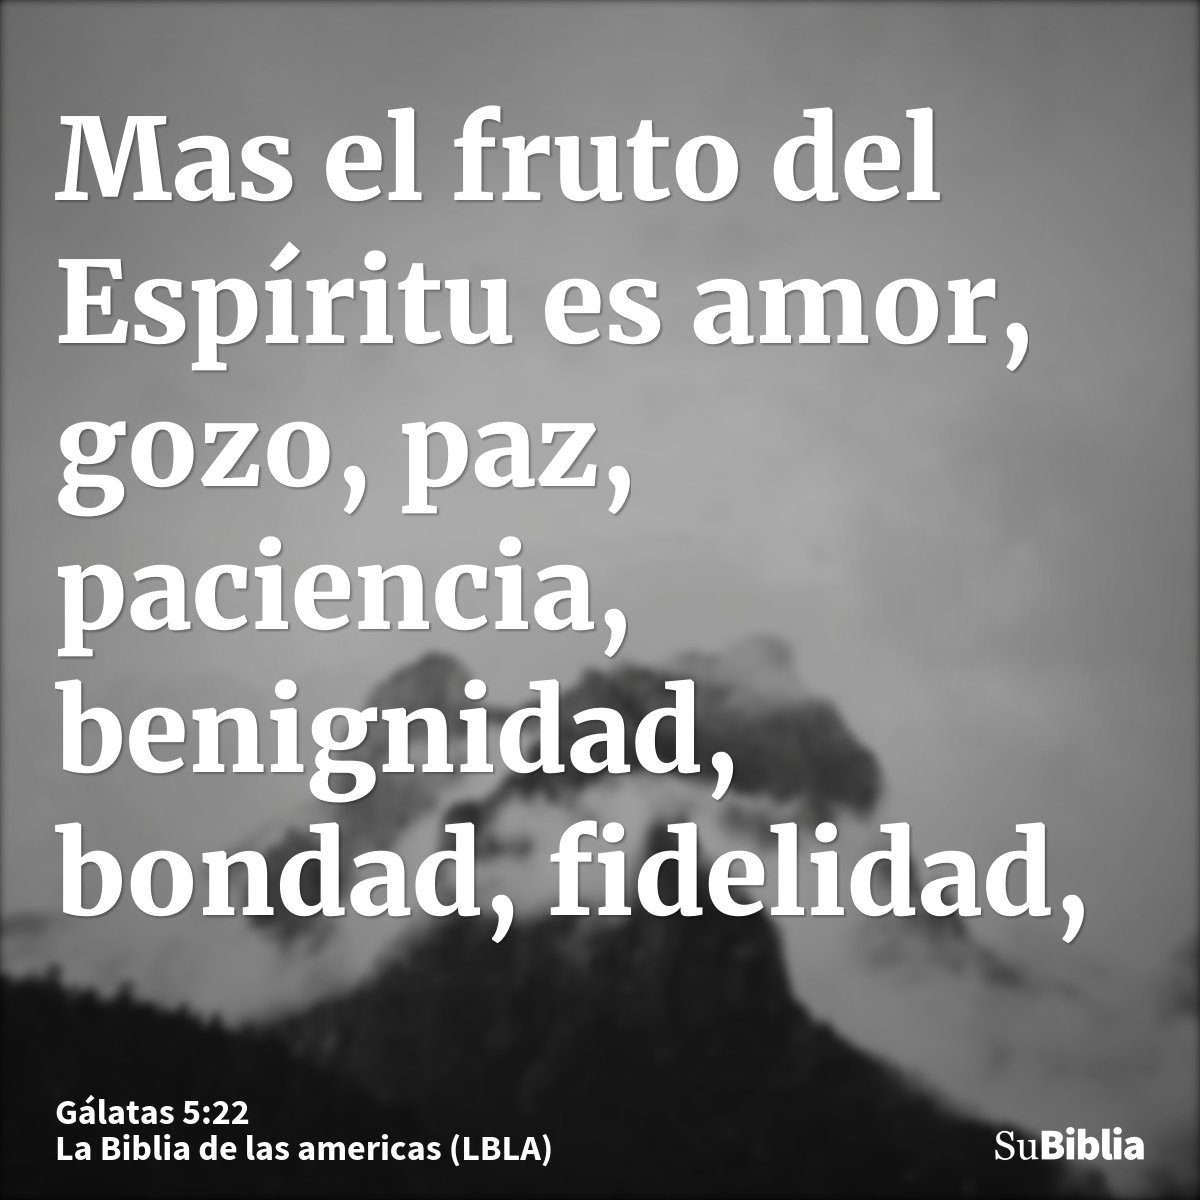 Mas el fruto del Espíritu es amor, gozo, paz, paciencia, benignidad, bondad, fidelidad,